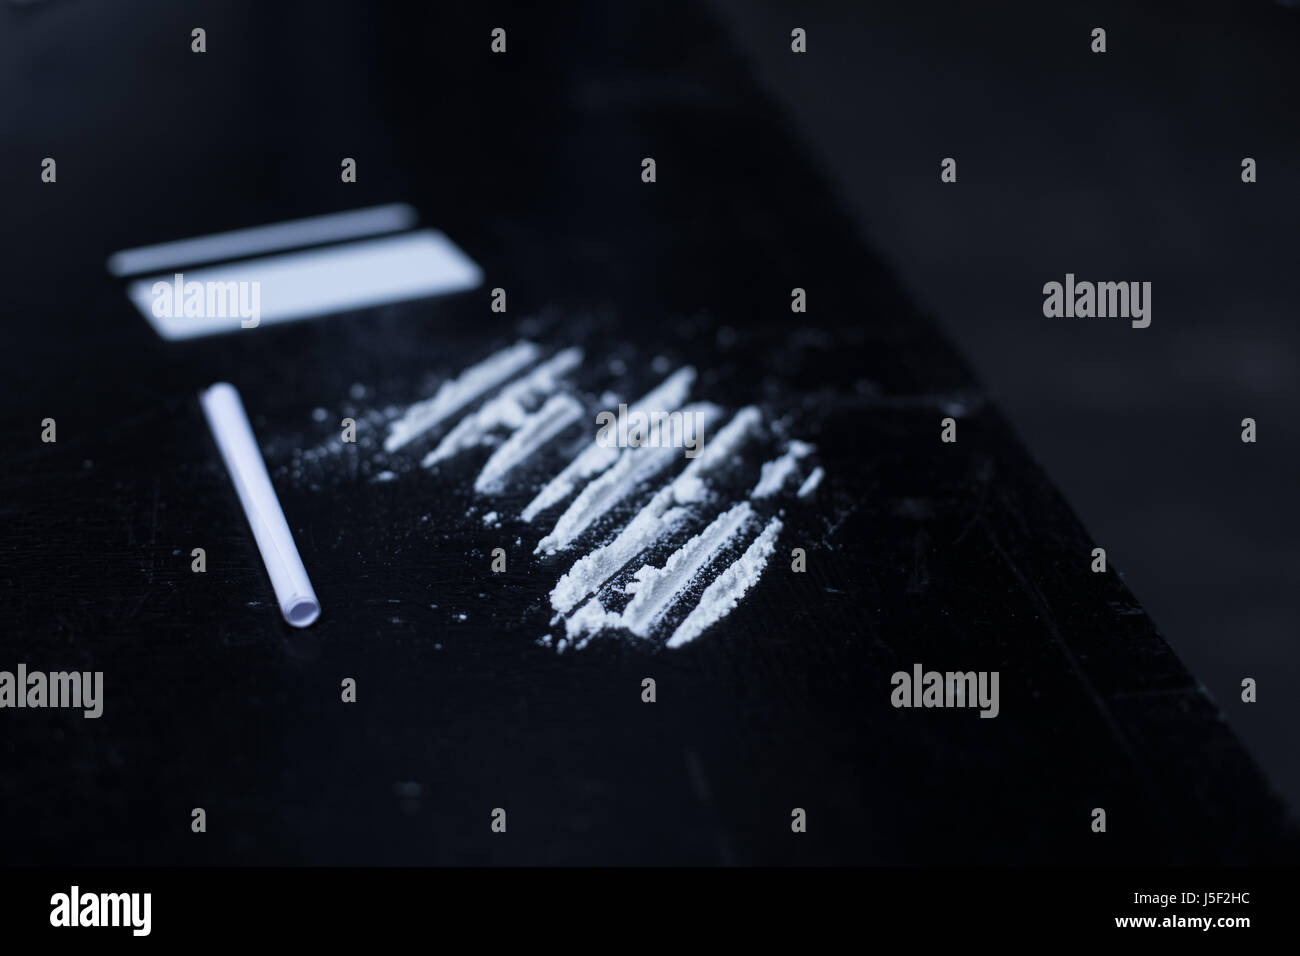 De longues lignes d'héroïne situé sur la table dans la pièce sombre Banque D'Images